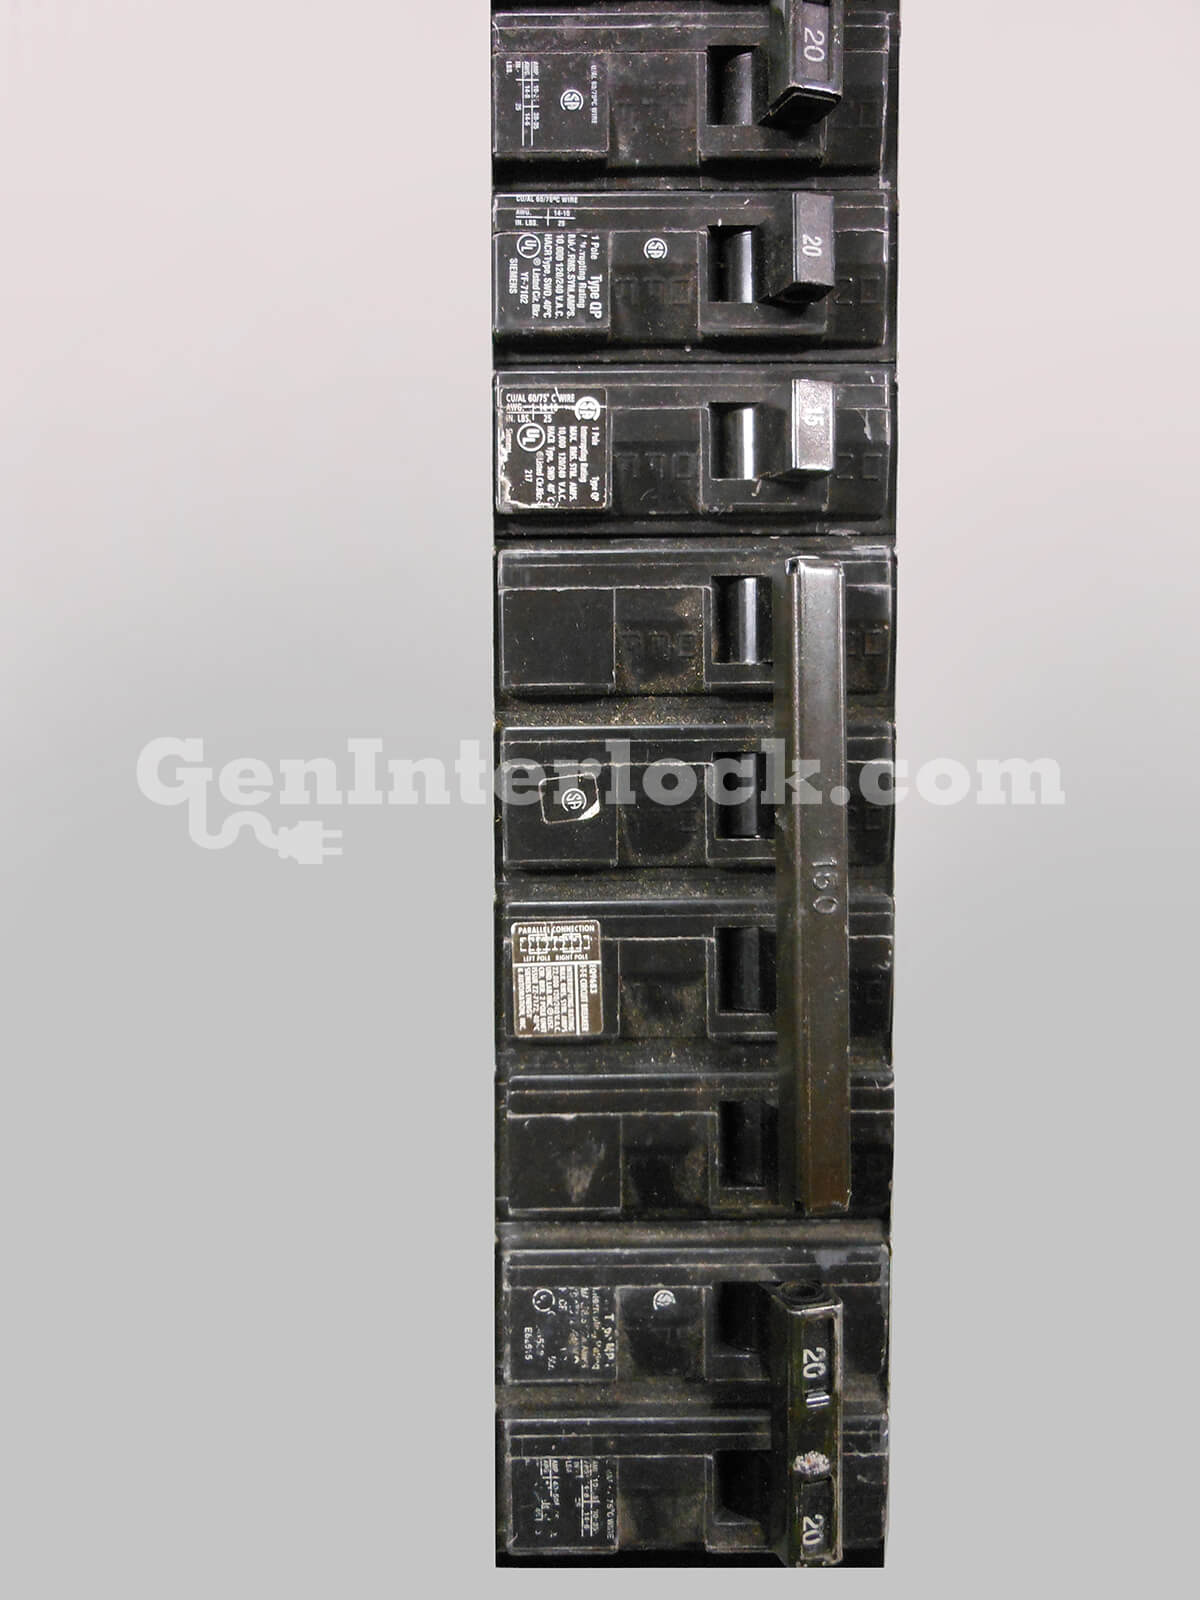 OEM Siemens, ITE Outdoor 150-200 Meter Main Generator Interlock kit Single | GenInterlock